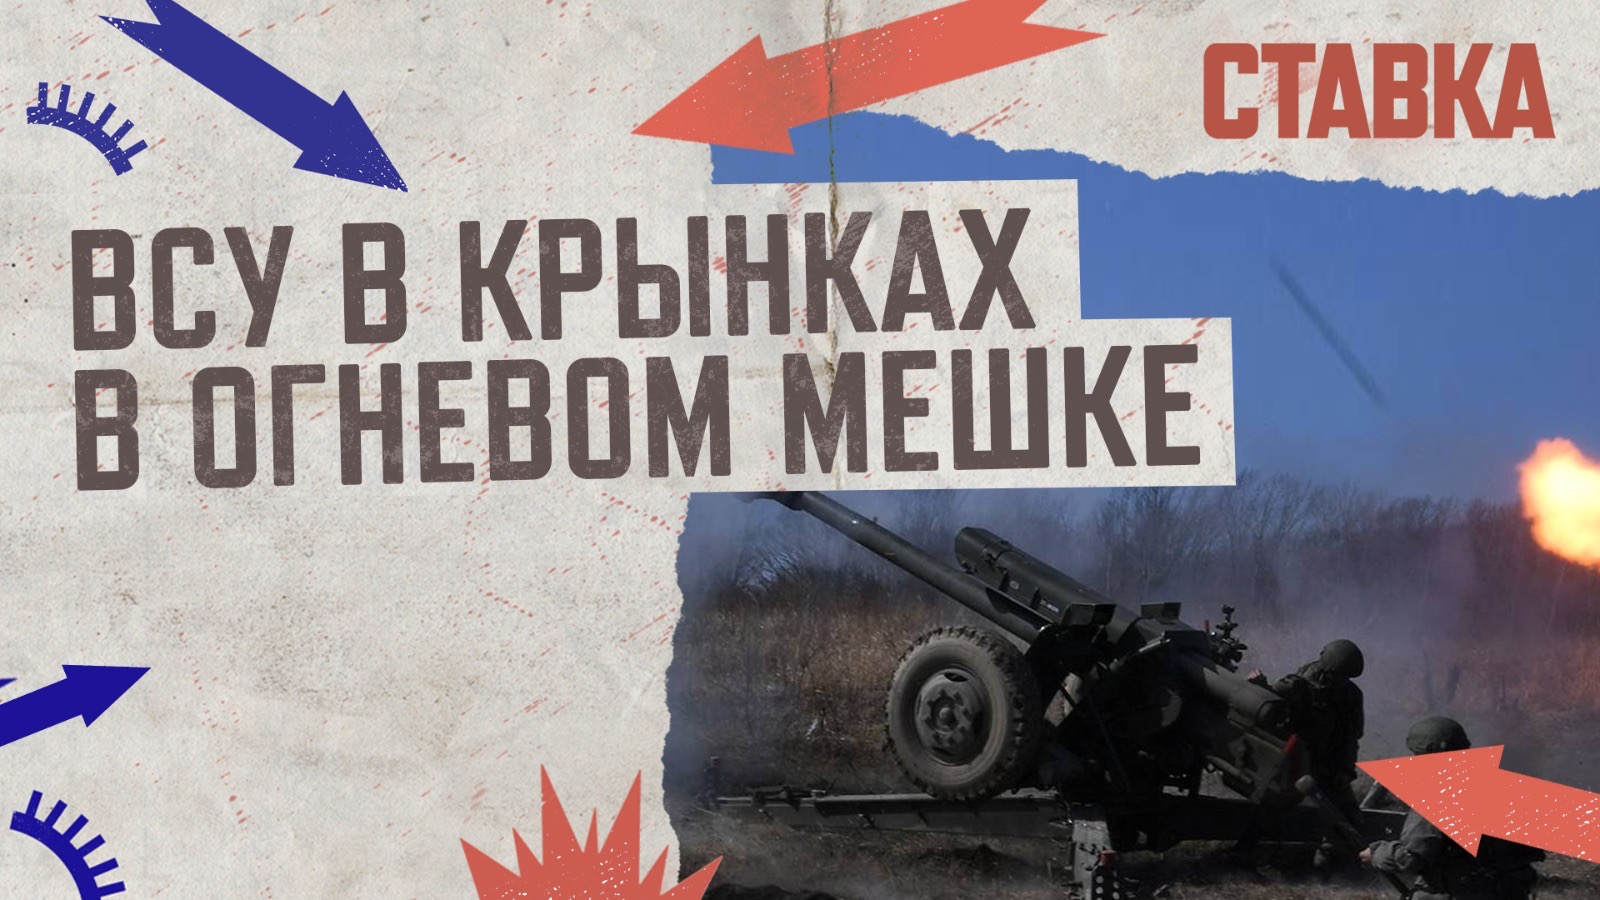 СВО 29.11 | ВСУ в Крынках в огневом мешке | Су-57 оснастили мини-БПЛА | На фронте распутица | СТАВКА